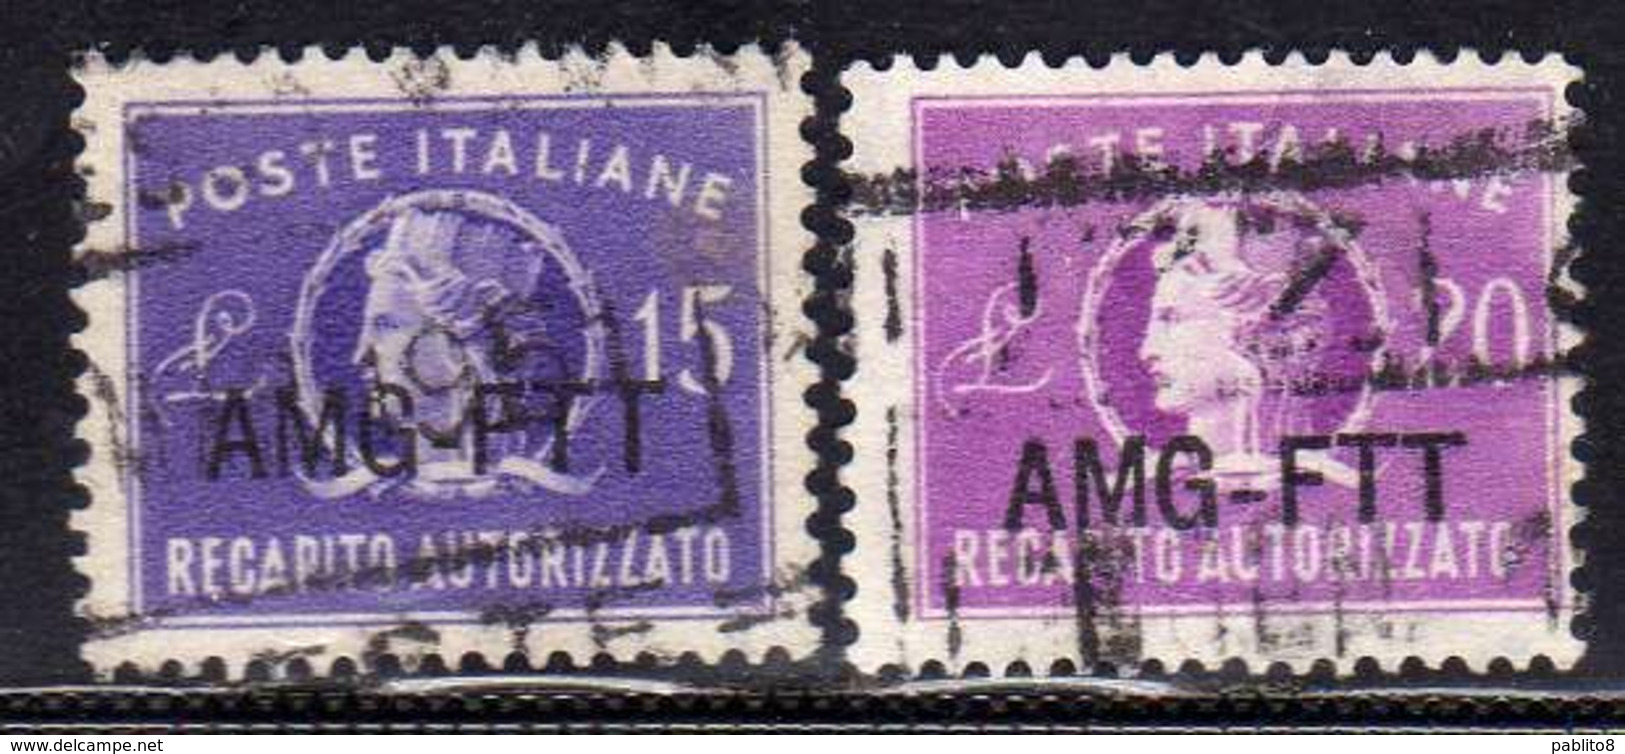 TRIESTE A 1949 1952 AMG - FTT ITALIA ITALY OVERPRINTED RECAPITO AUTORIZZATO LIRE 15+20 SERIE COMPLETA USATA USED OBLITER - Revenue Stamps